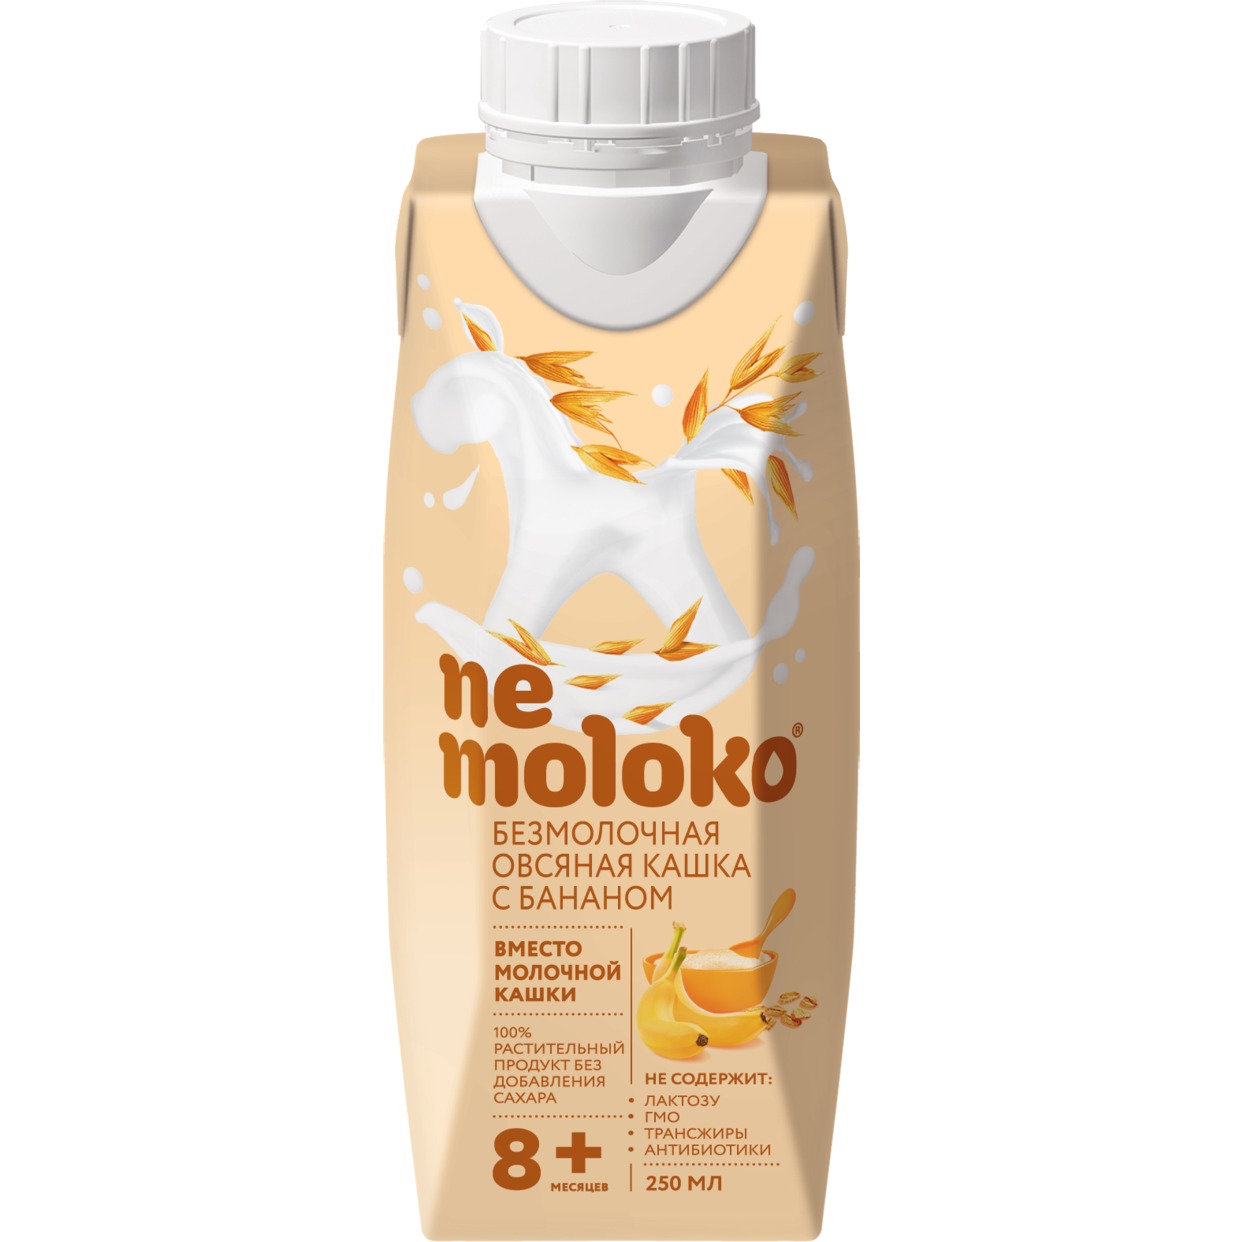 "Nemoloko" каша овсяная безмолочная с бананом для детского питания, обогащенная витаминами и минеральными веществами 0,25л по акции в Пятерочке